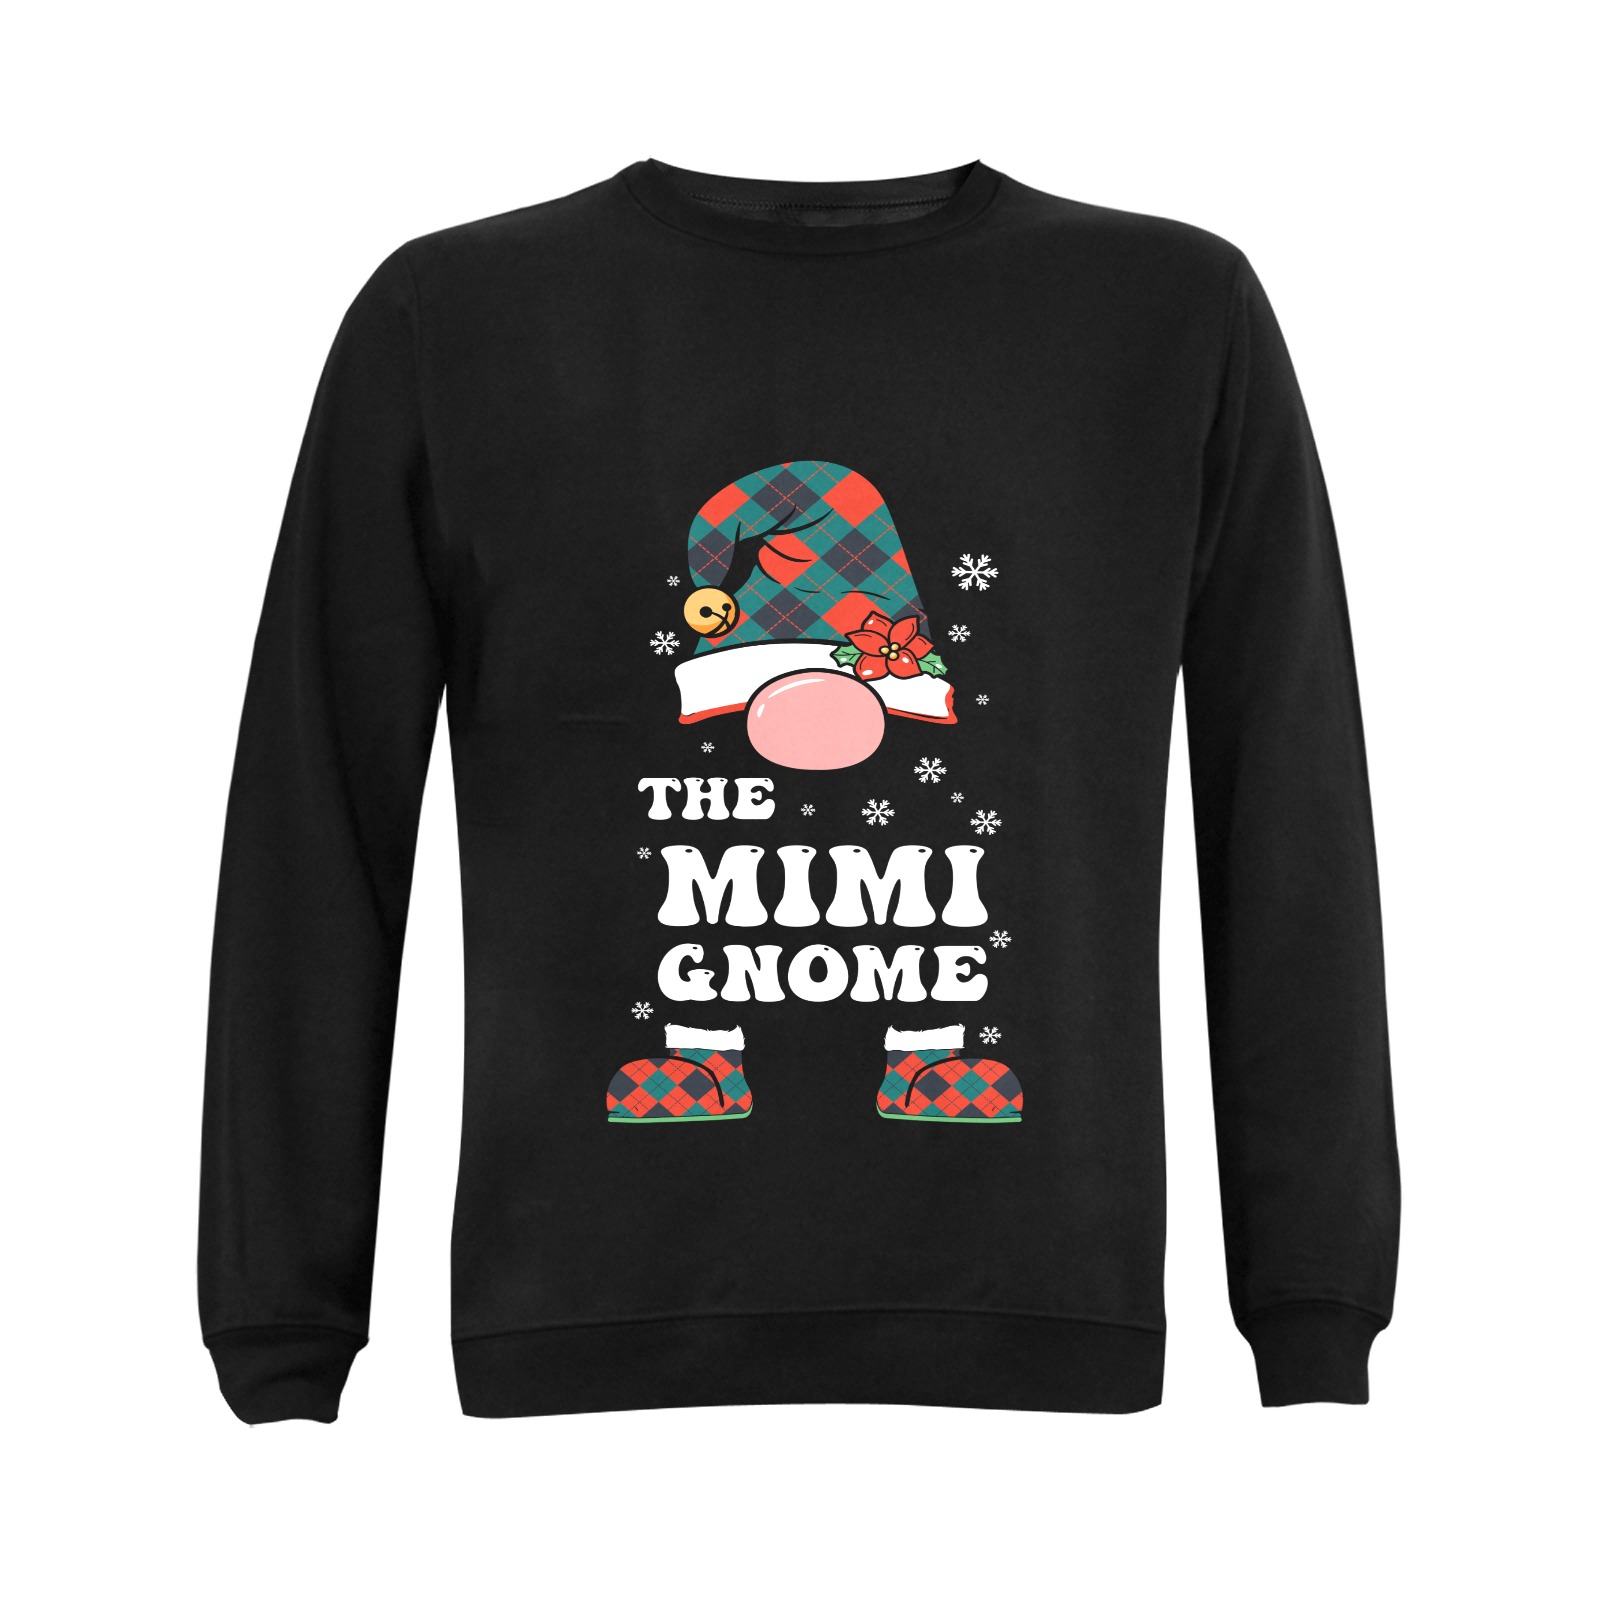 The Mimi Gnome (BL) Gildan Crewneck Sweatshirt(NEW) (Model H01)